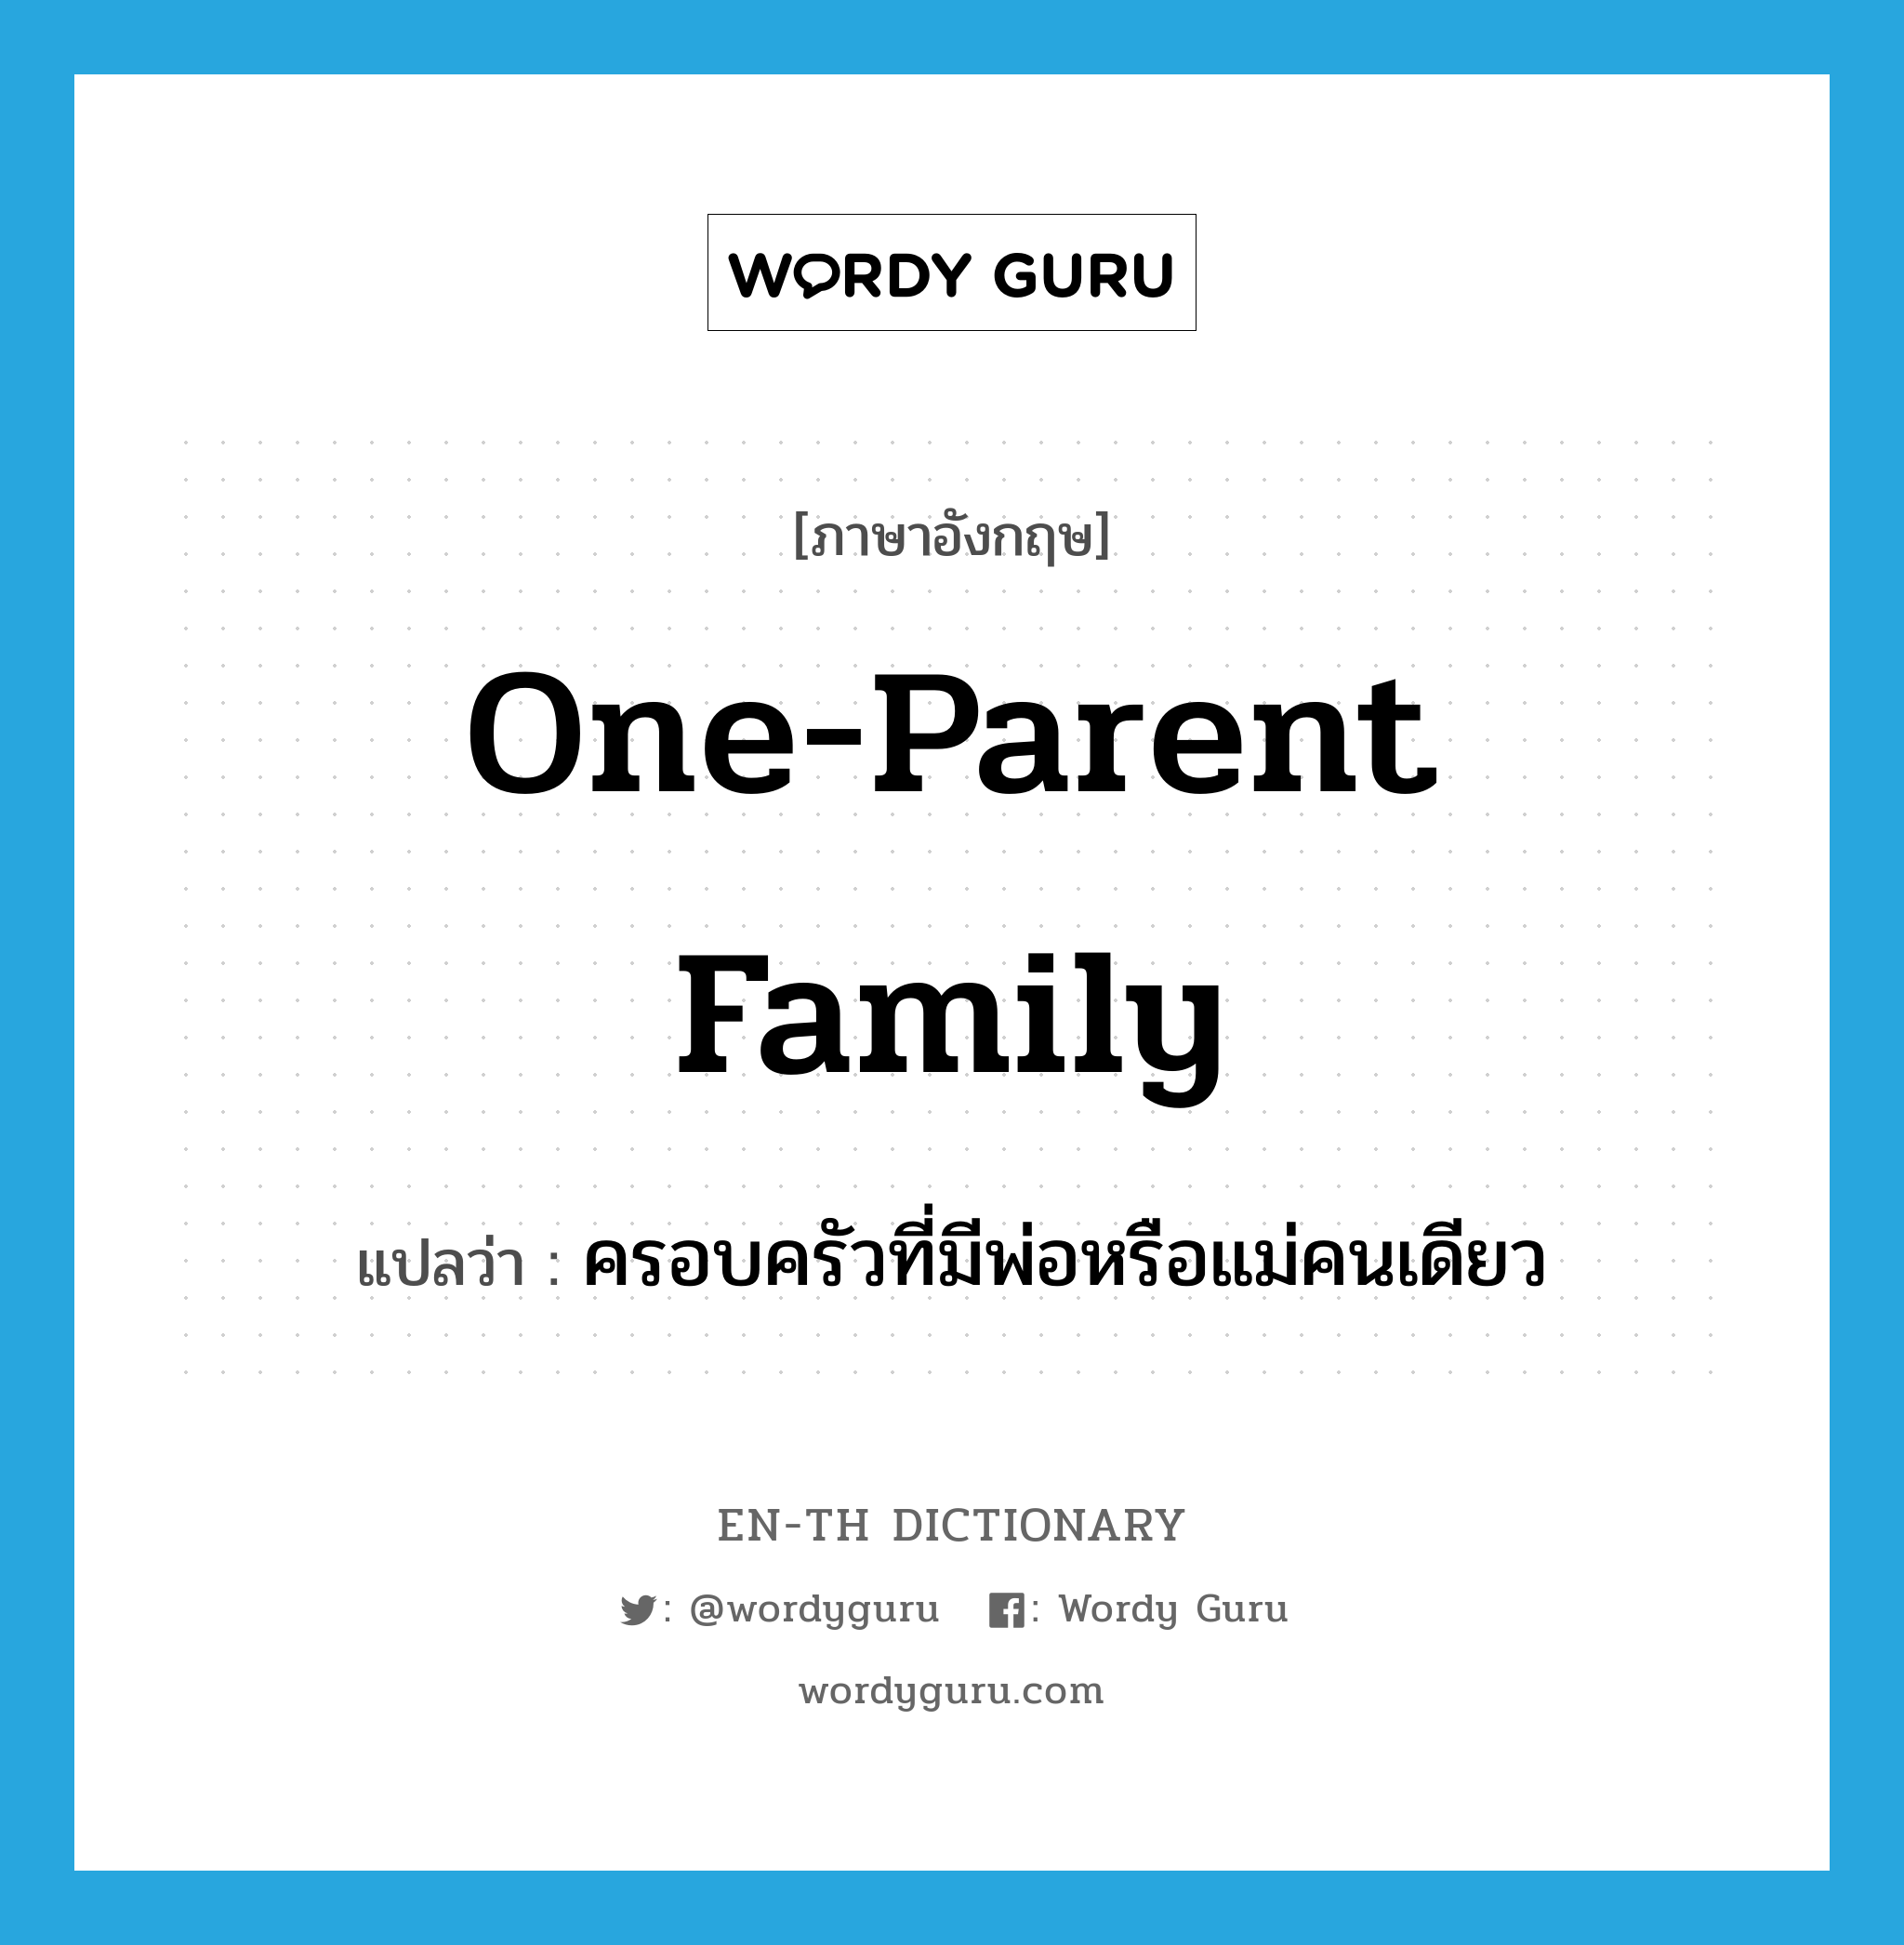 ครอบครัวที่มีพ่อหรือแม่คนเดียว ภาษาอังกฤษ?, คำศัพท์ภาษาอังกฤษ ครอบครัวที่มีพ่อหรือแม่คนเดียว แปลว่า one-parent family ประเภท N หมวด N